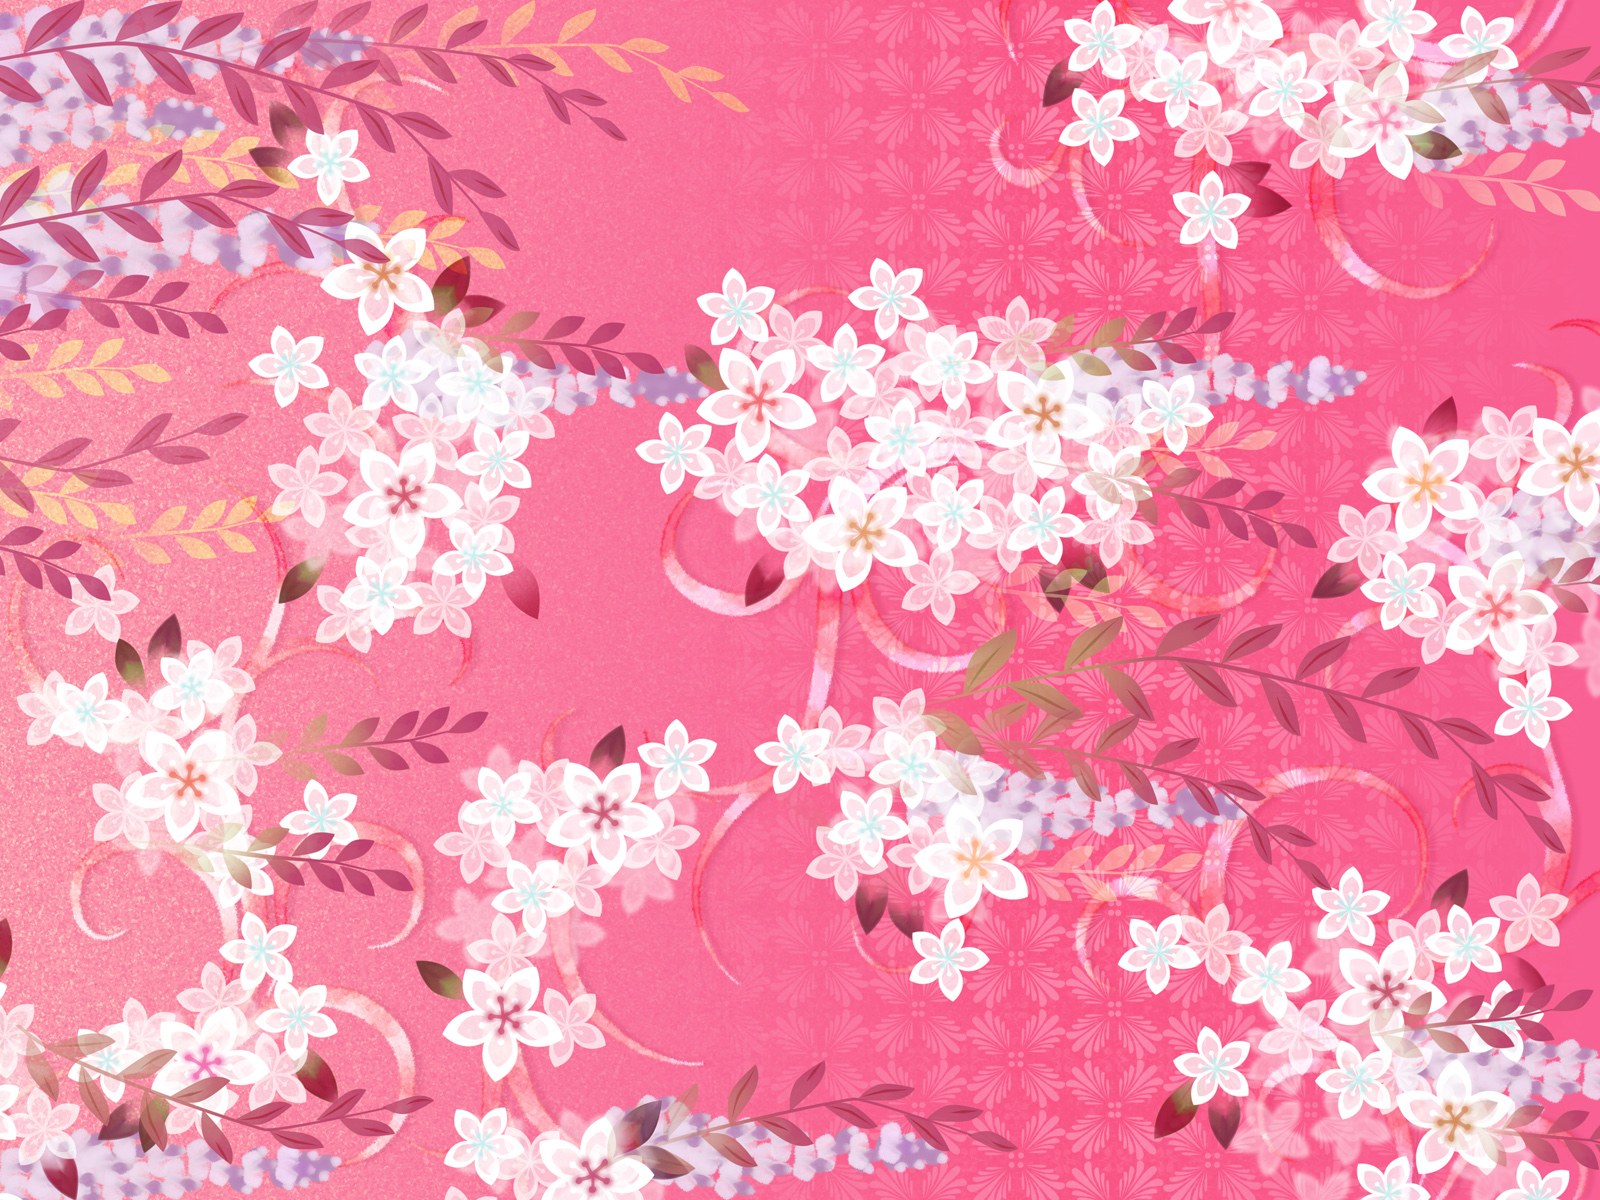 壁纸1600x1200 日本风格 甜美碎花图案图片壁纸 美丽碎花布 之 粉红甜美系壁纸 美丽碎花布 之 粉红甜美系图片 美丽碎花布 之 粉红甜美系素材 花卉壁纸 花卉图库 花卉图片素材桌面壁纸